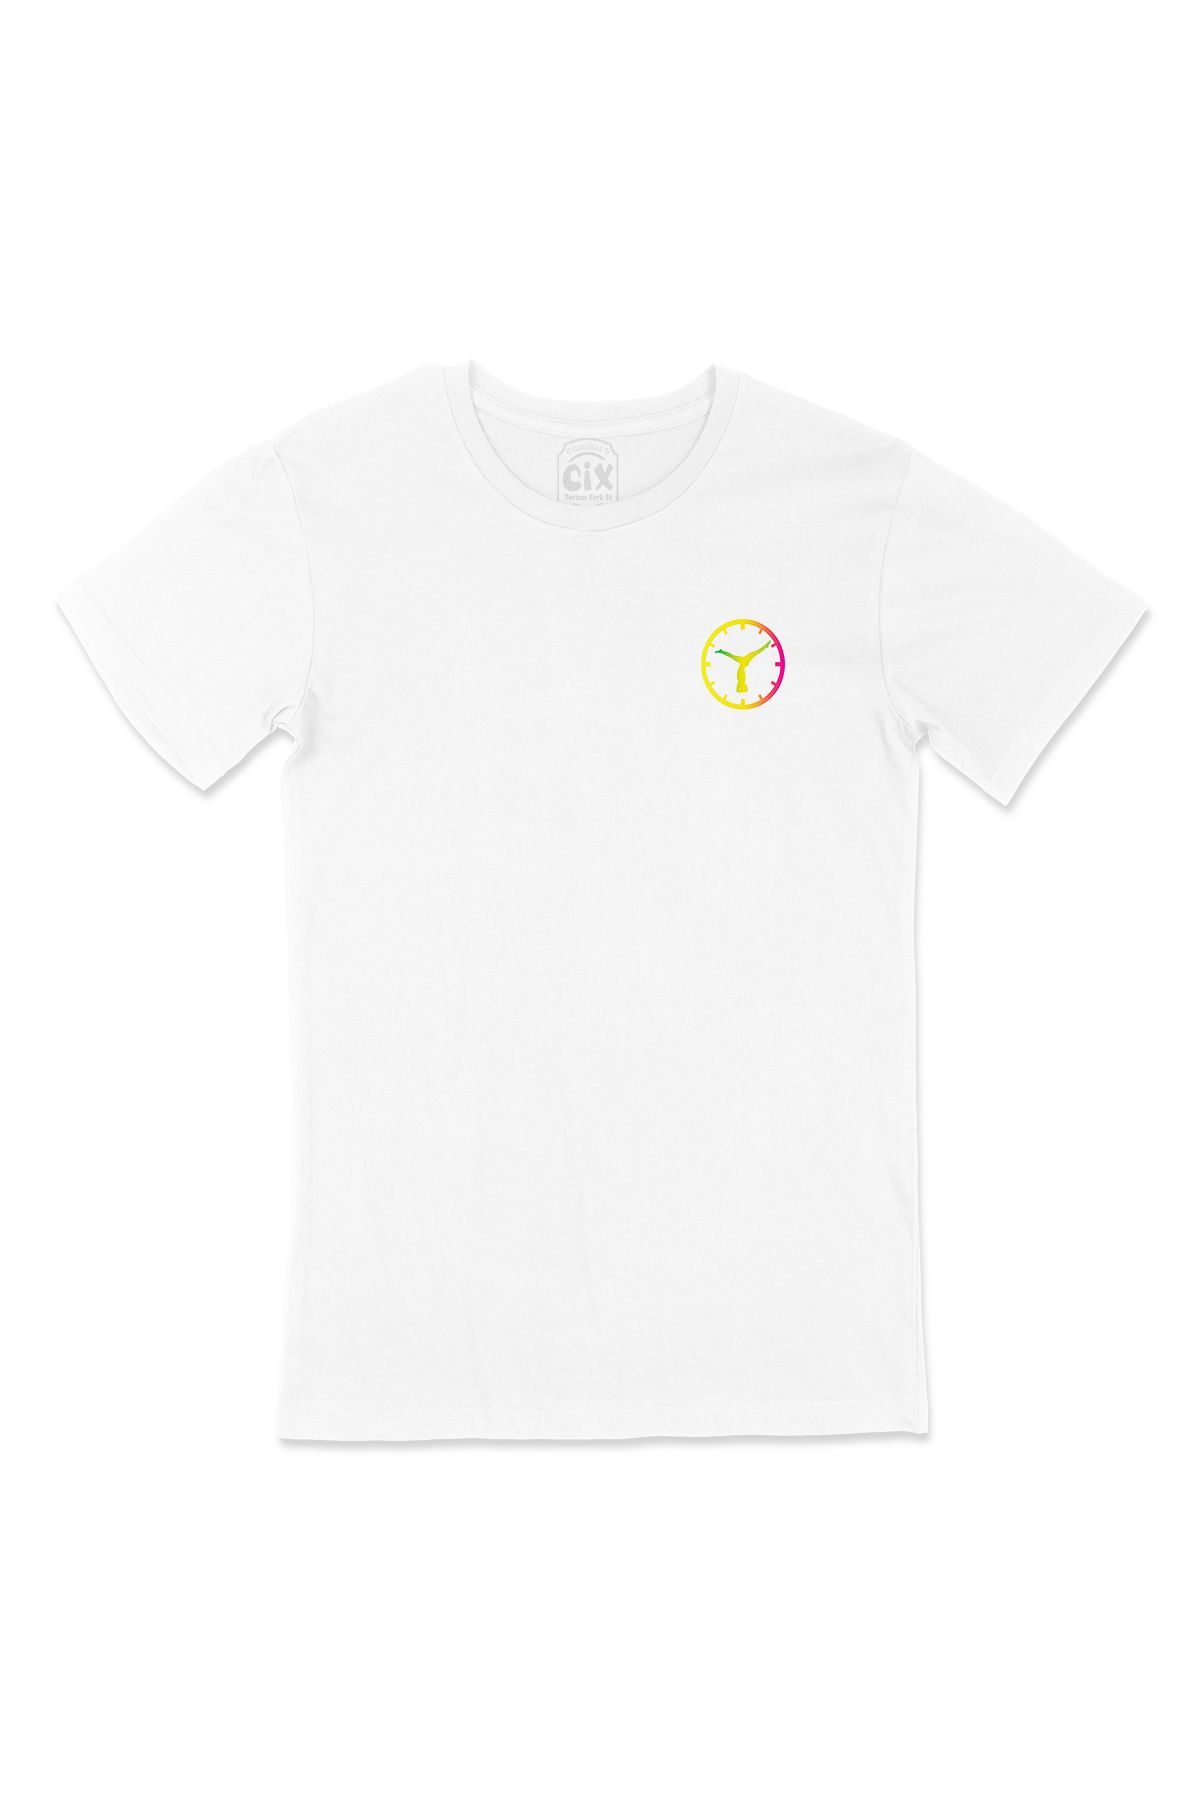 Cix Yogo Saati Cep Logo Tasarımlı Beyaz Tişört